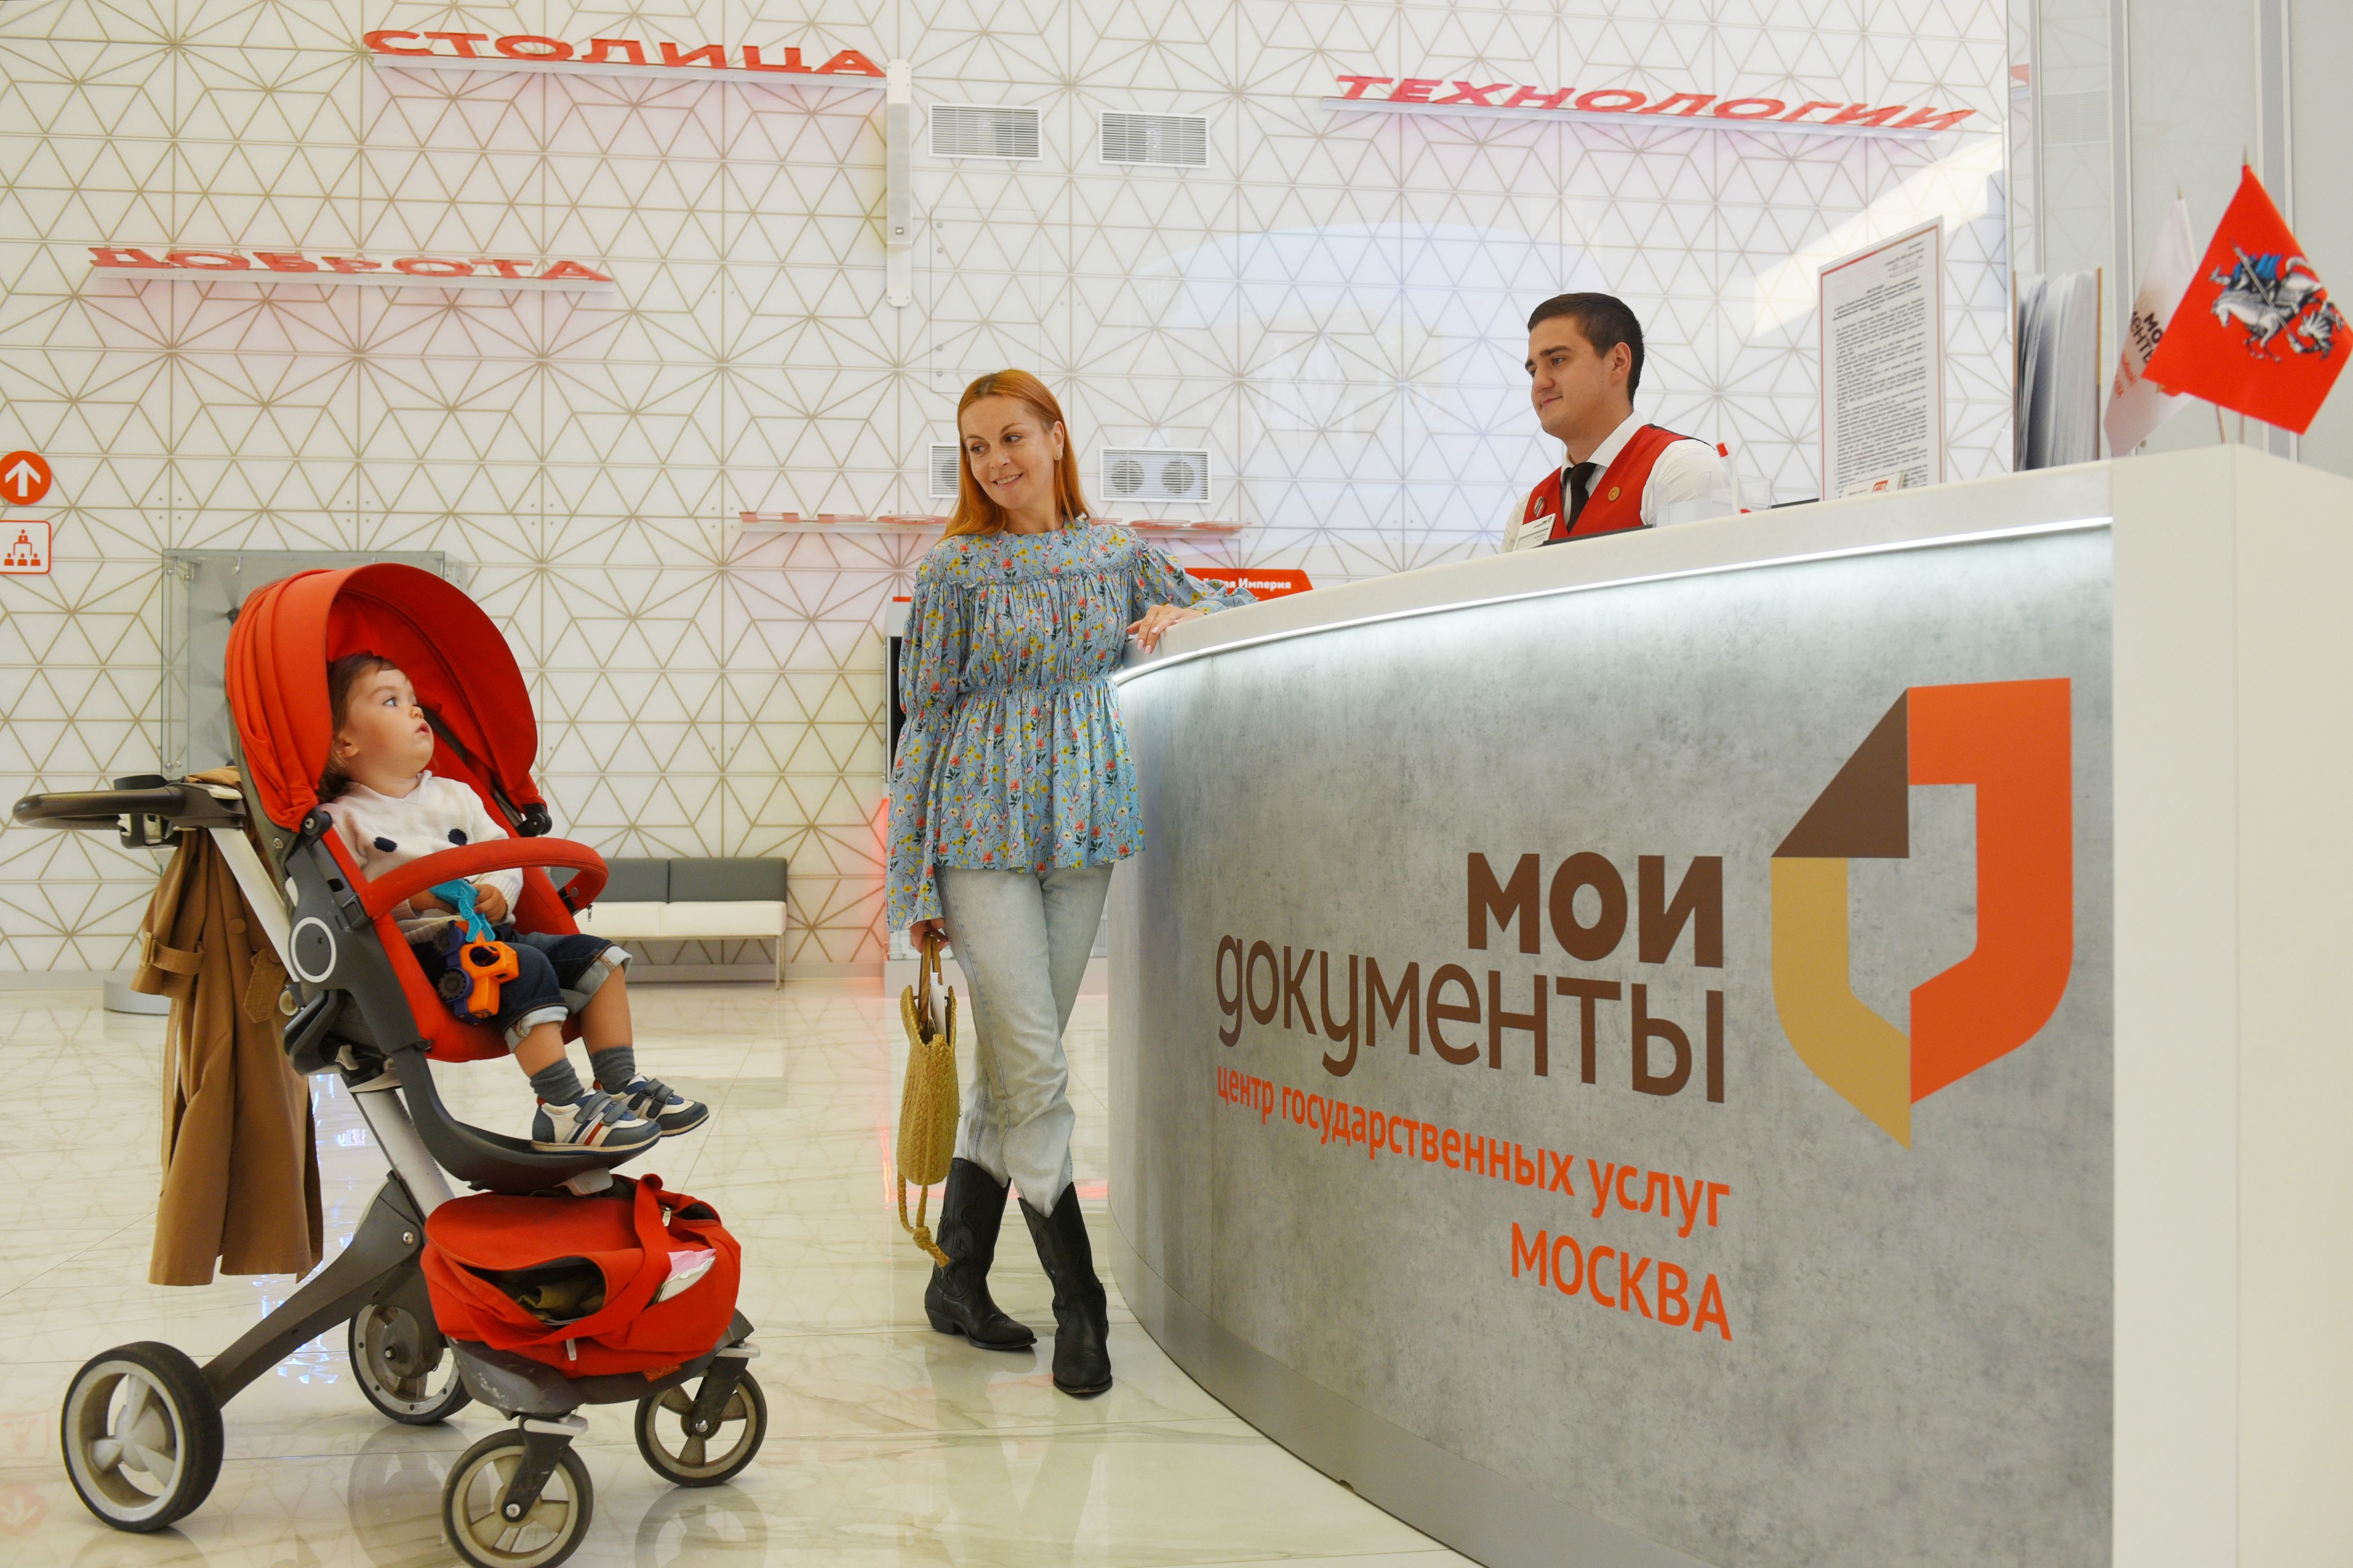 Мамы могут получить более 20 услуг в московских офисах «Мои документы». Фото: Александр Кожохин